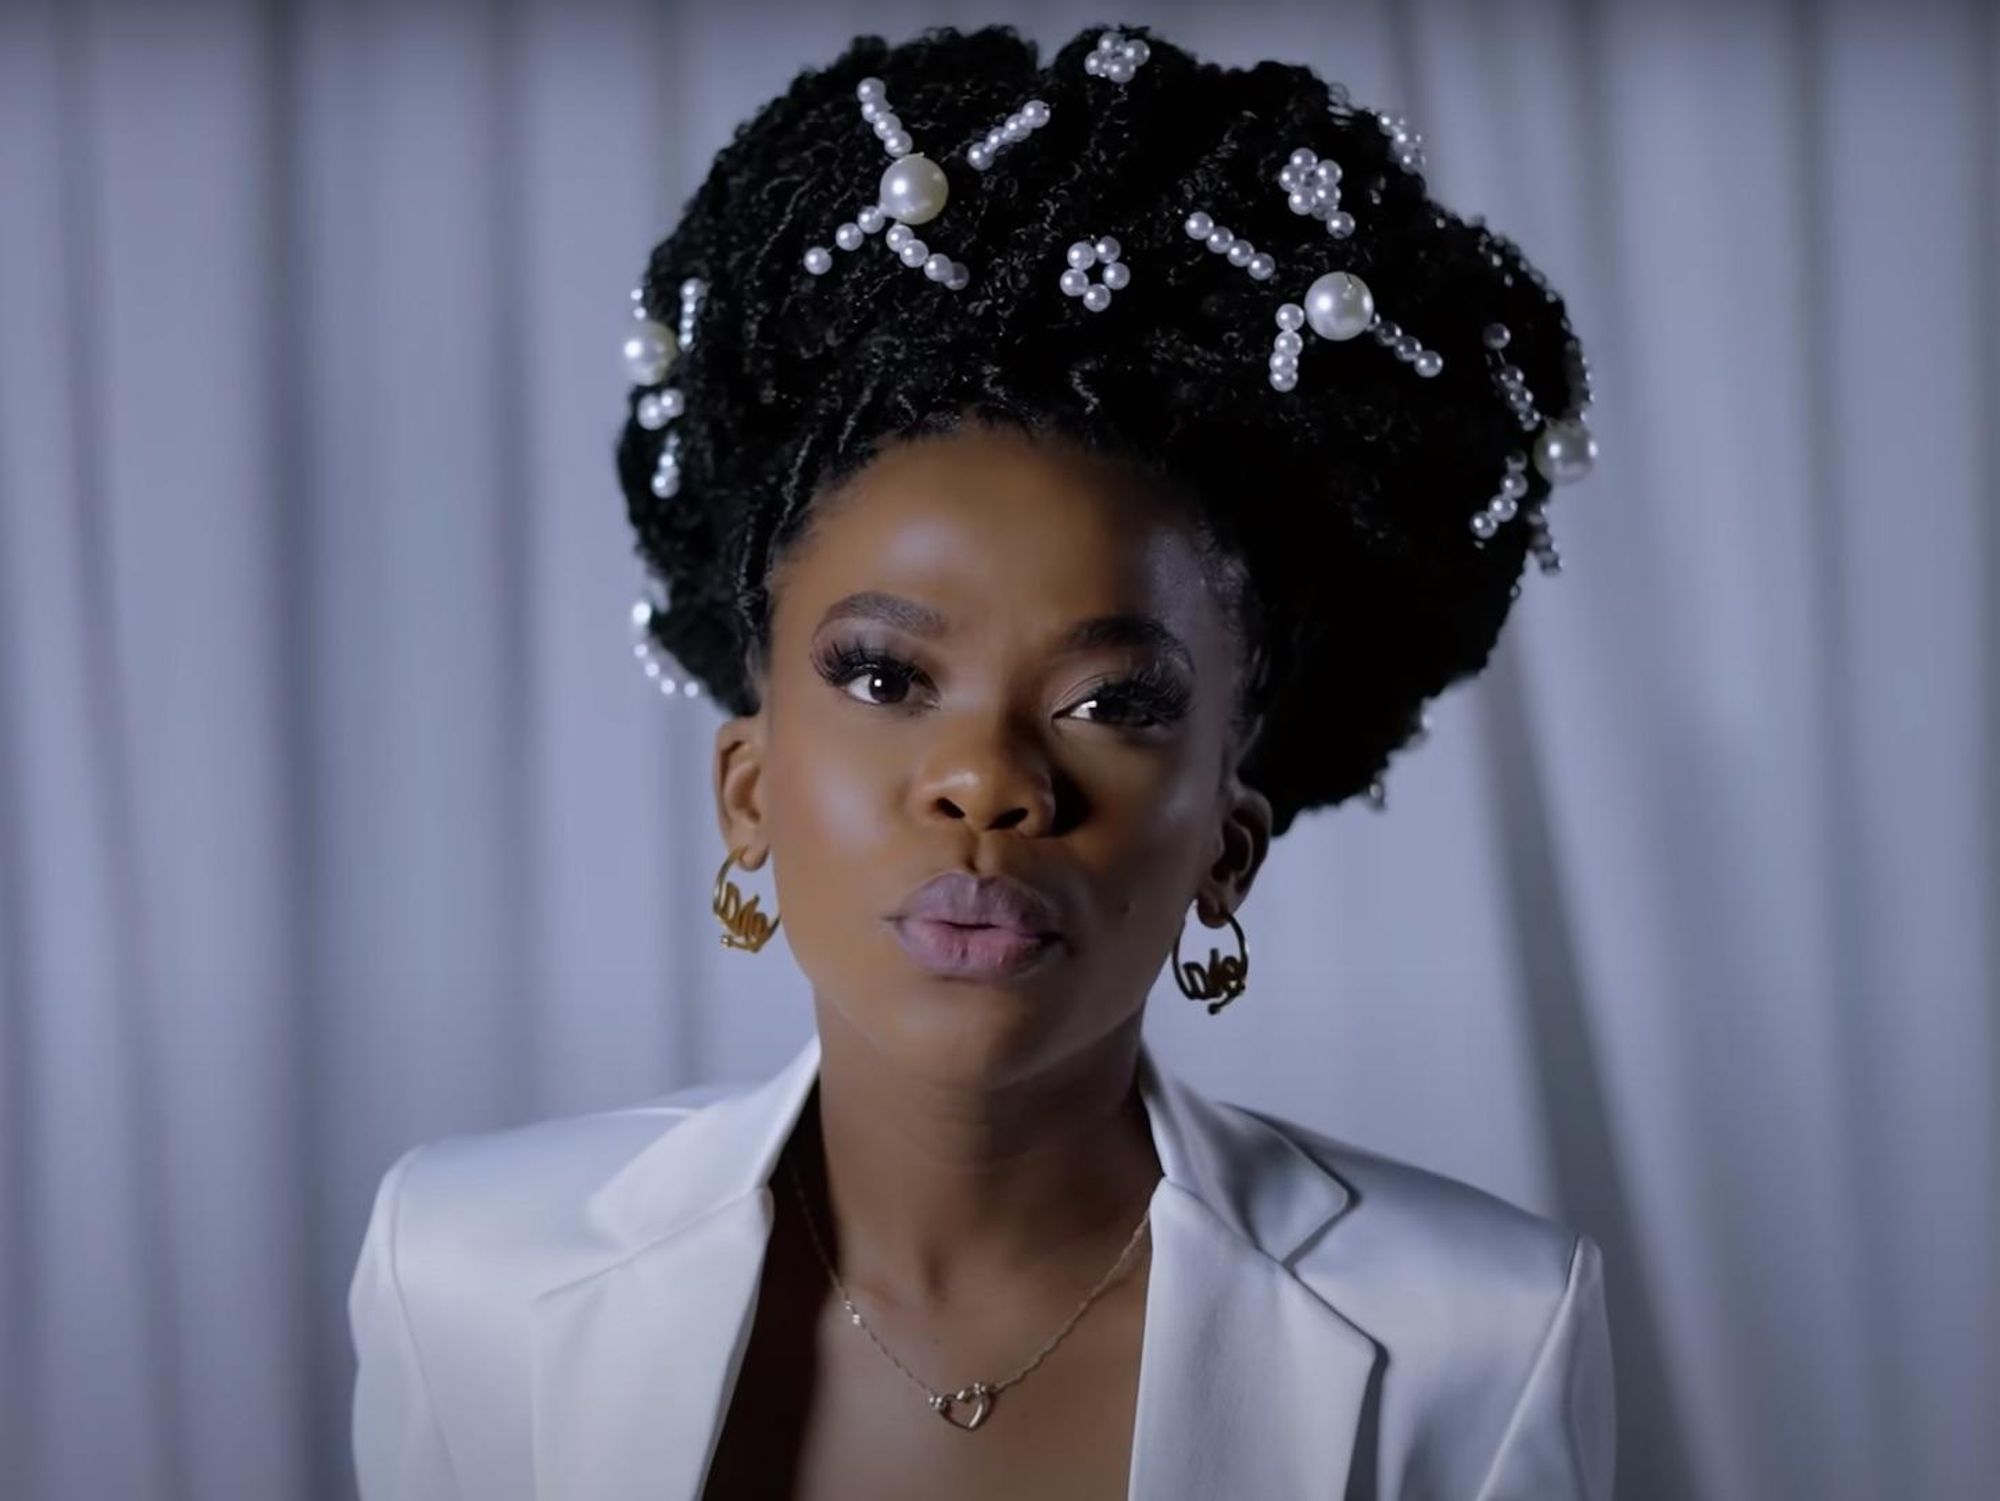 nomfundo moh sings in her music video for Sibaningi